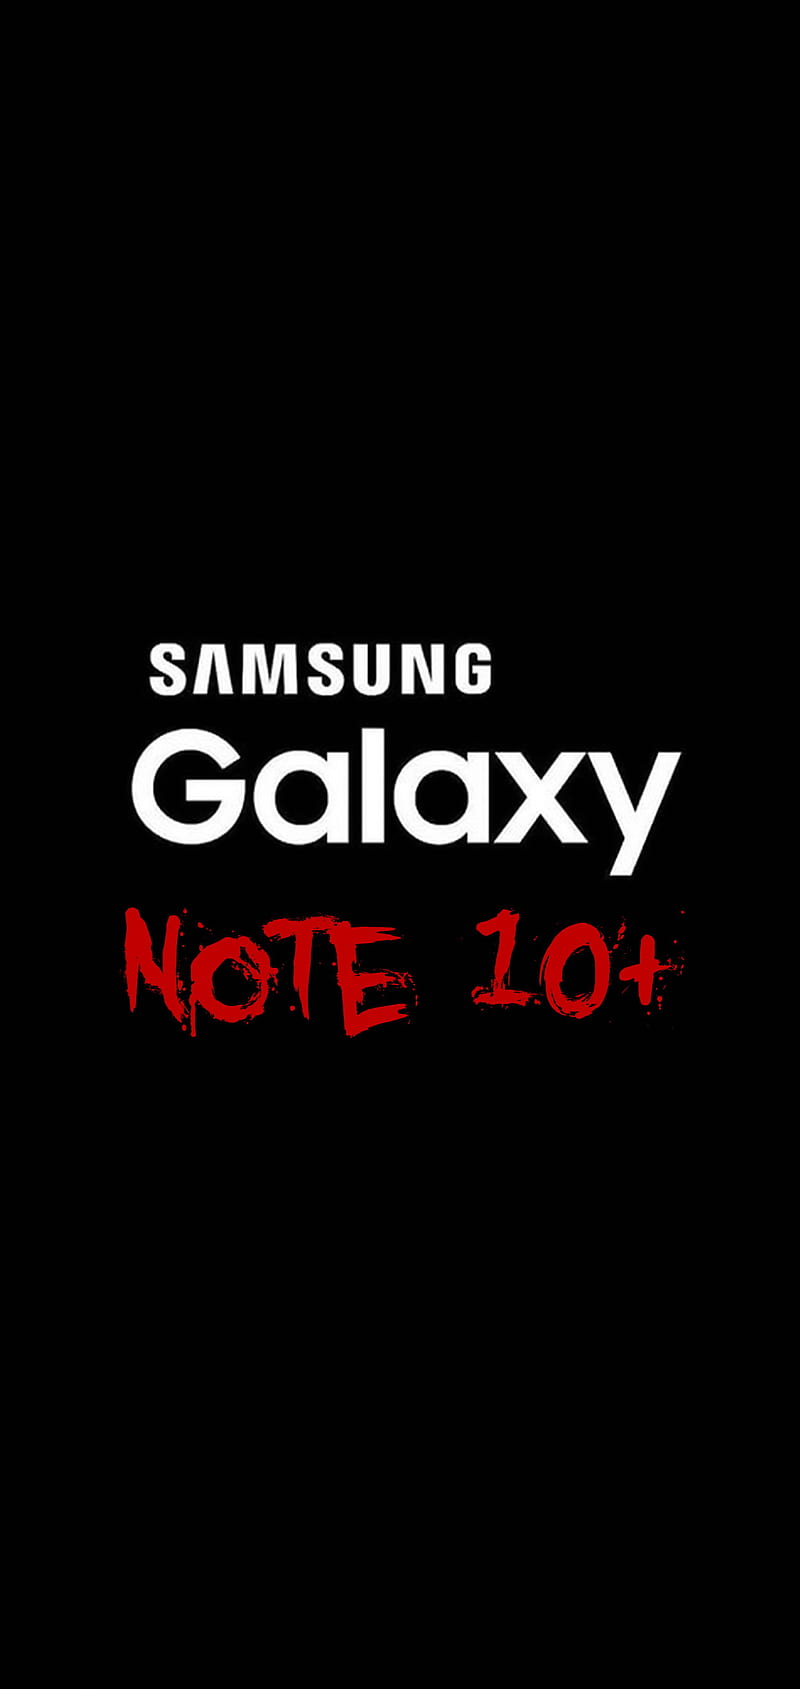 Note 10 Plus, 10, black, galaxy, logo, note, phone, samsung, simple, HD  phone wallpaper | Peakpx